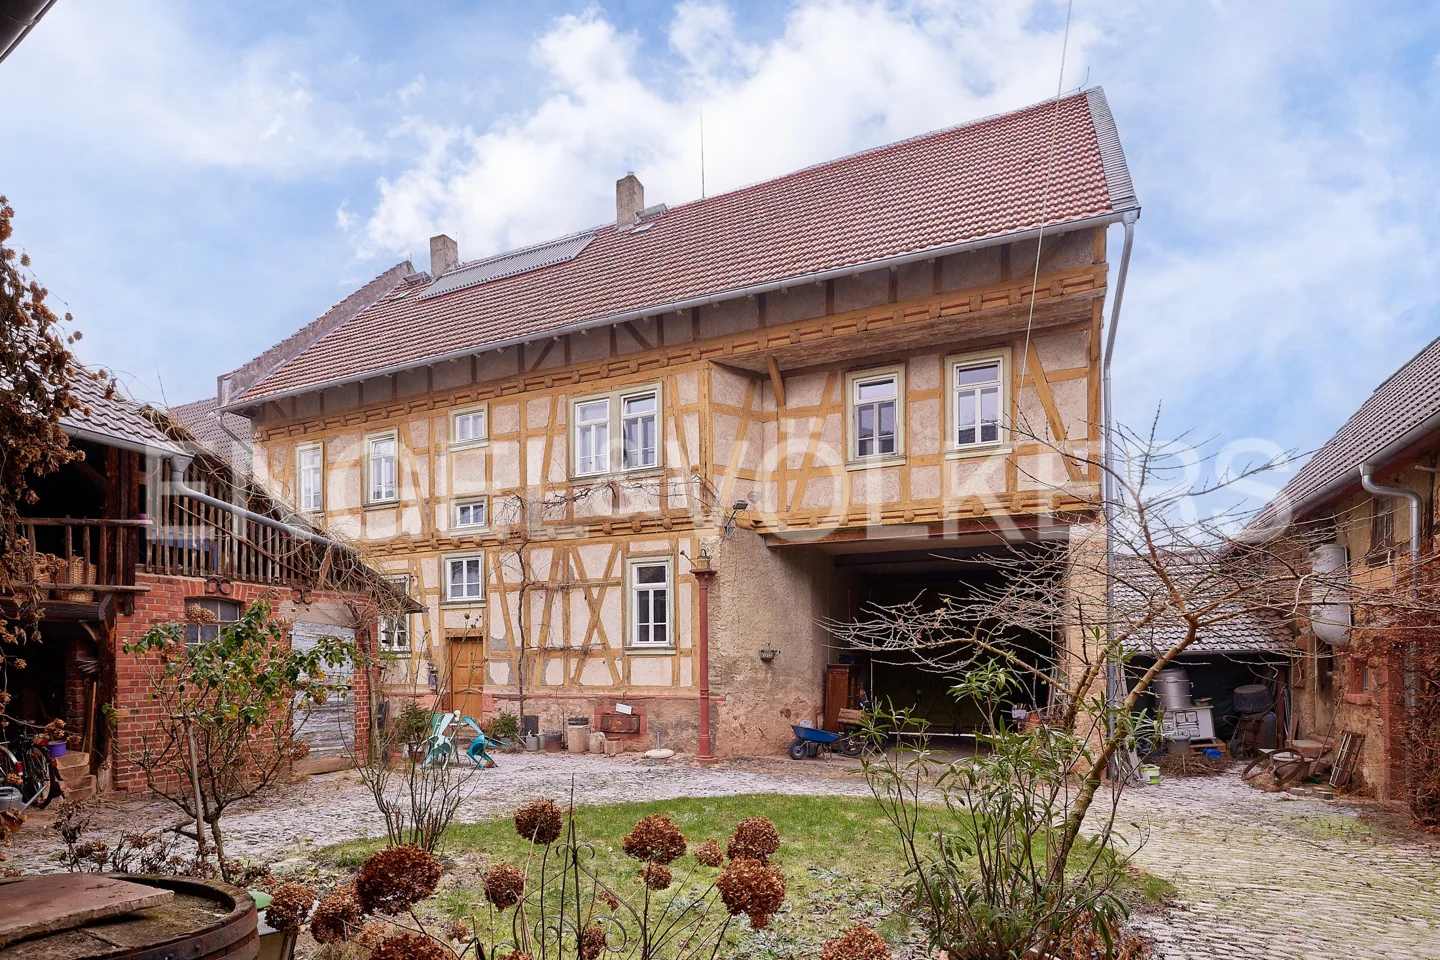 Einzigartiges Anwesen in Ober-Klingen: Historischer Charme trifft auf modernen Komfort und ökologisches Potenzial